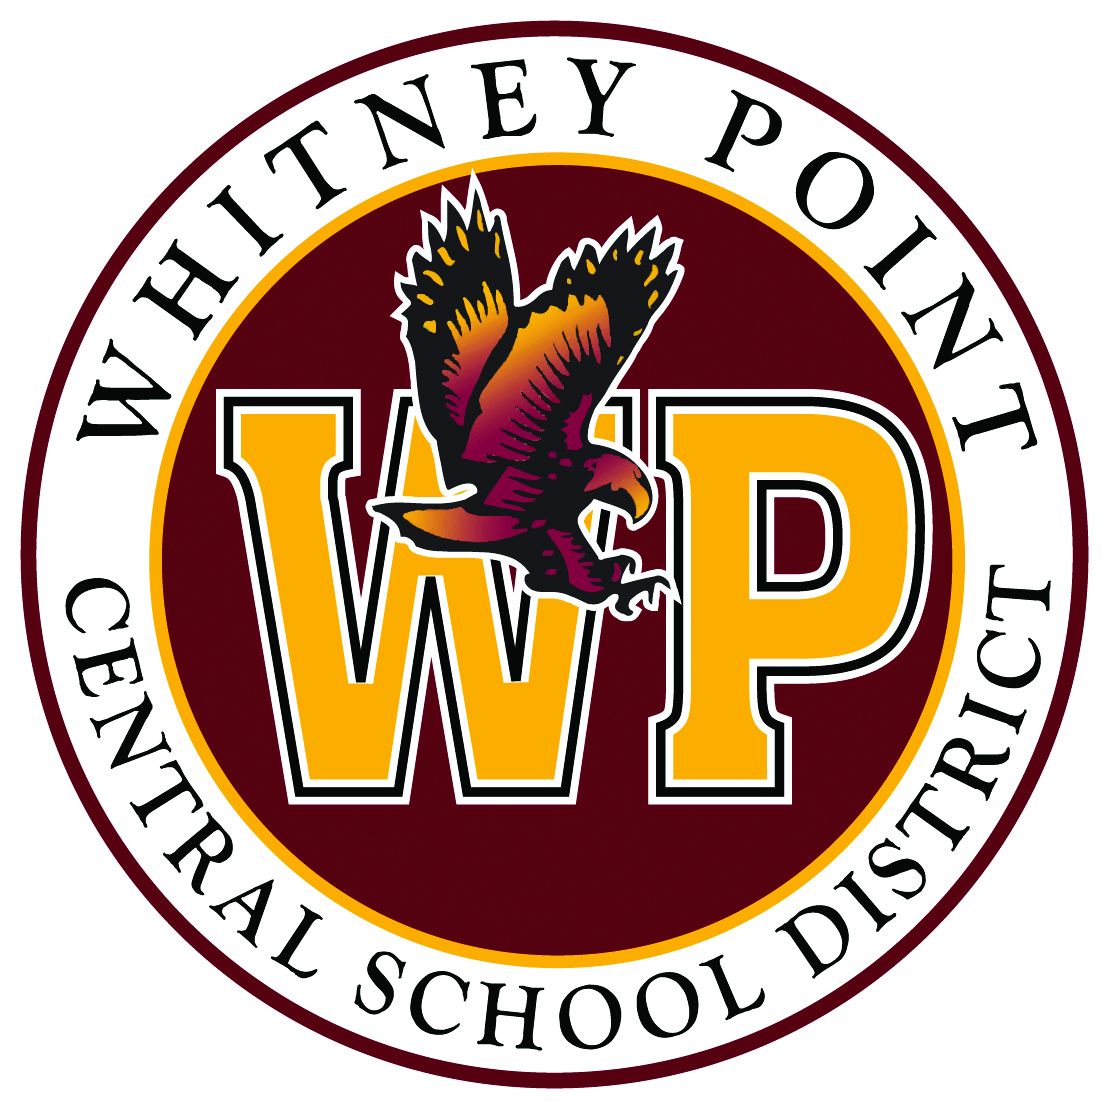 Wp Logo